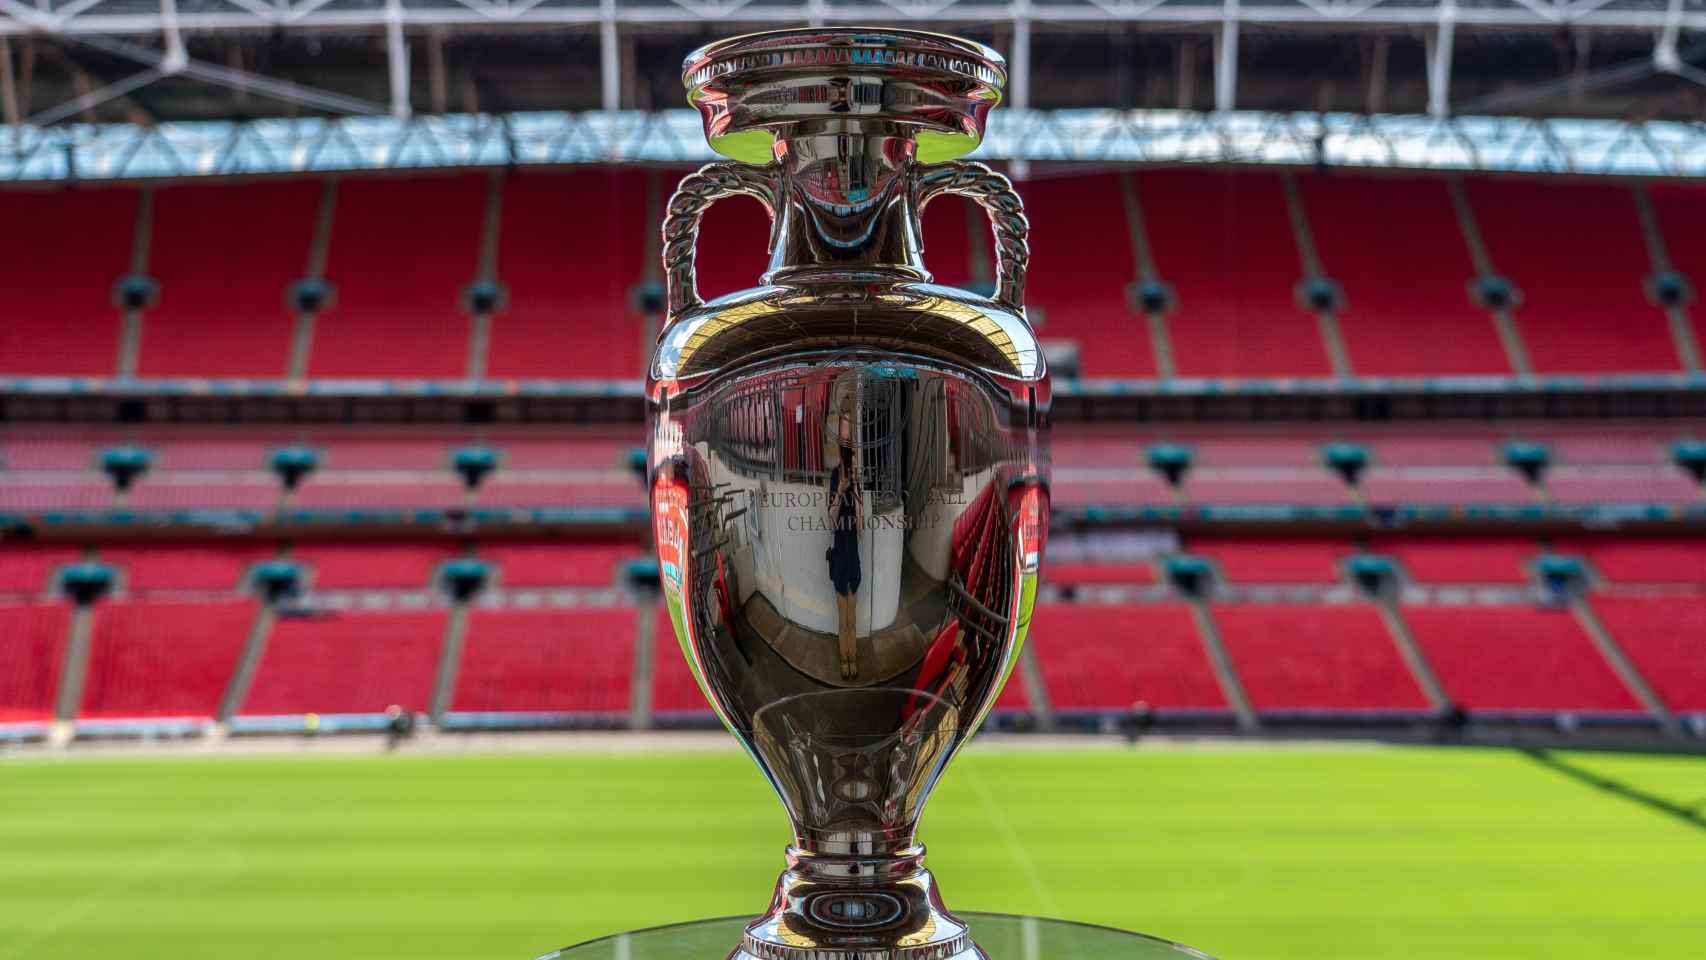 La copa de la Eurocopa en Wembley / UEFA